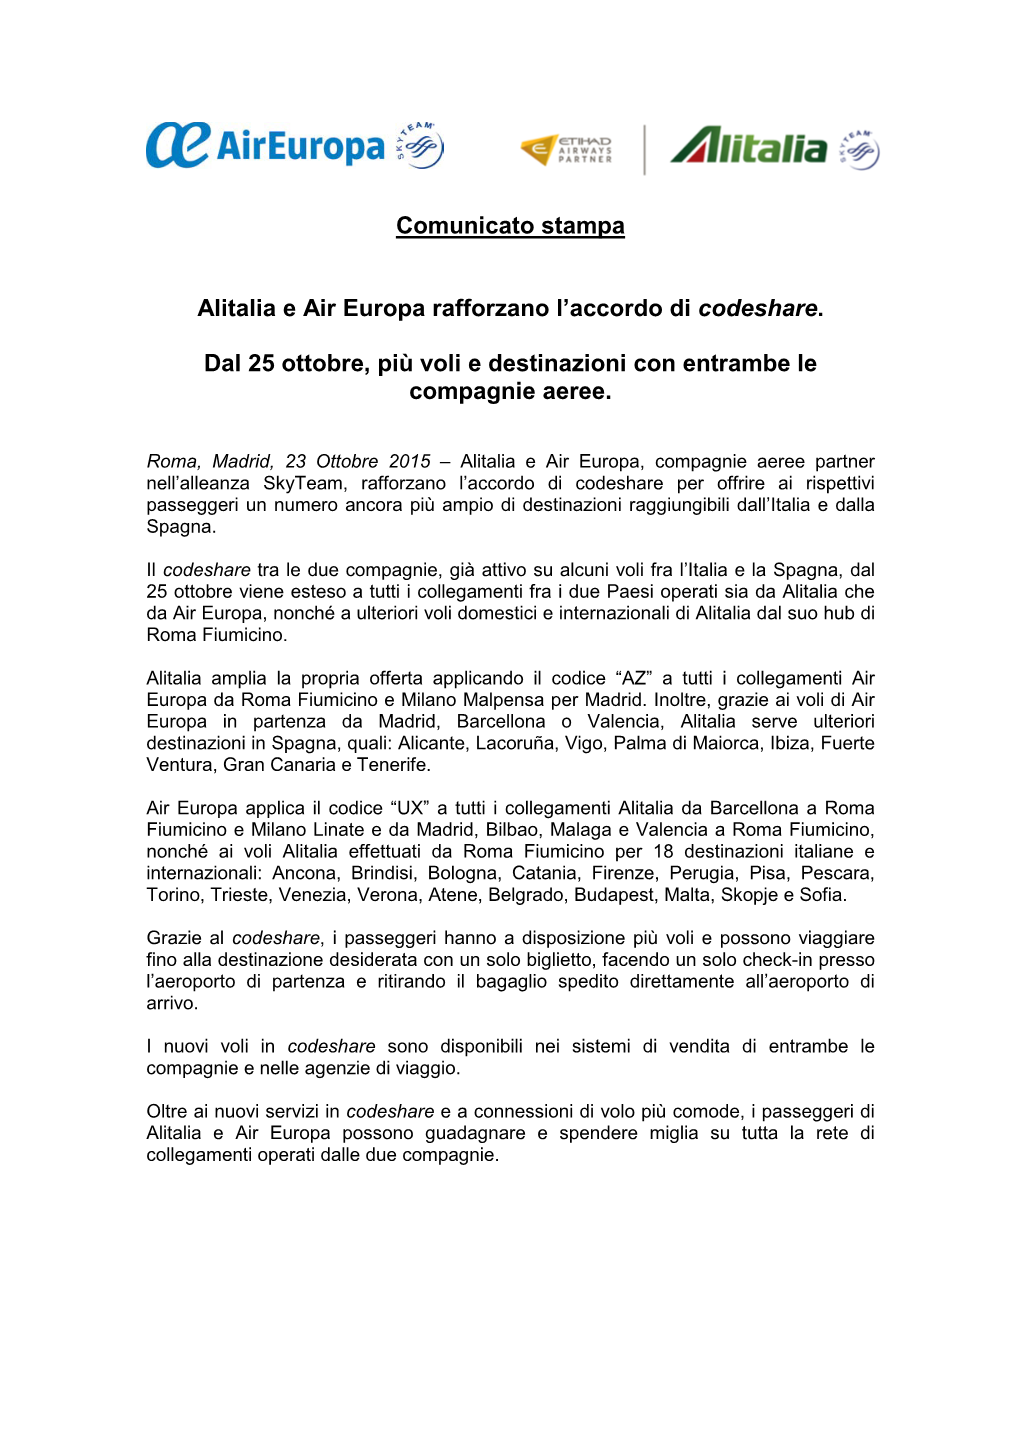 Comunicato Stampa Alitalia E Air Europa Rafforzano L'accordo Di